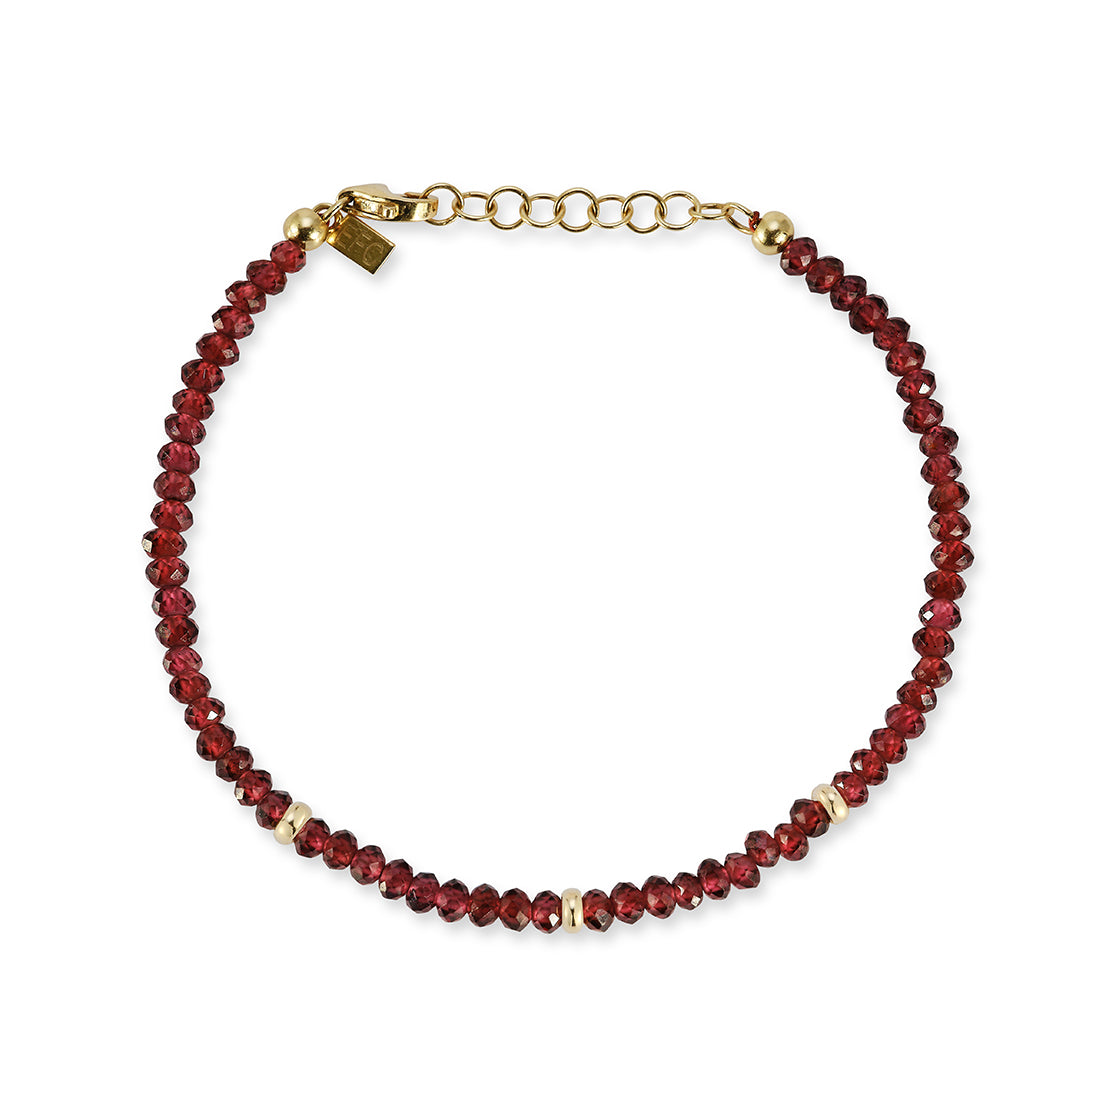 The Beaded Bracelet Gift Set - Garnet / January Option